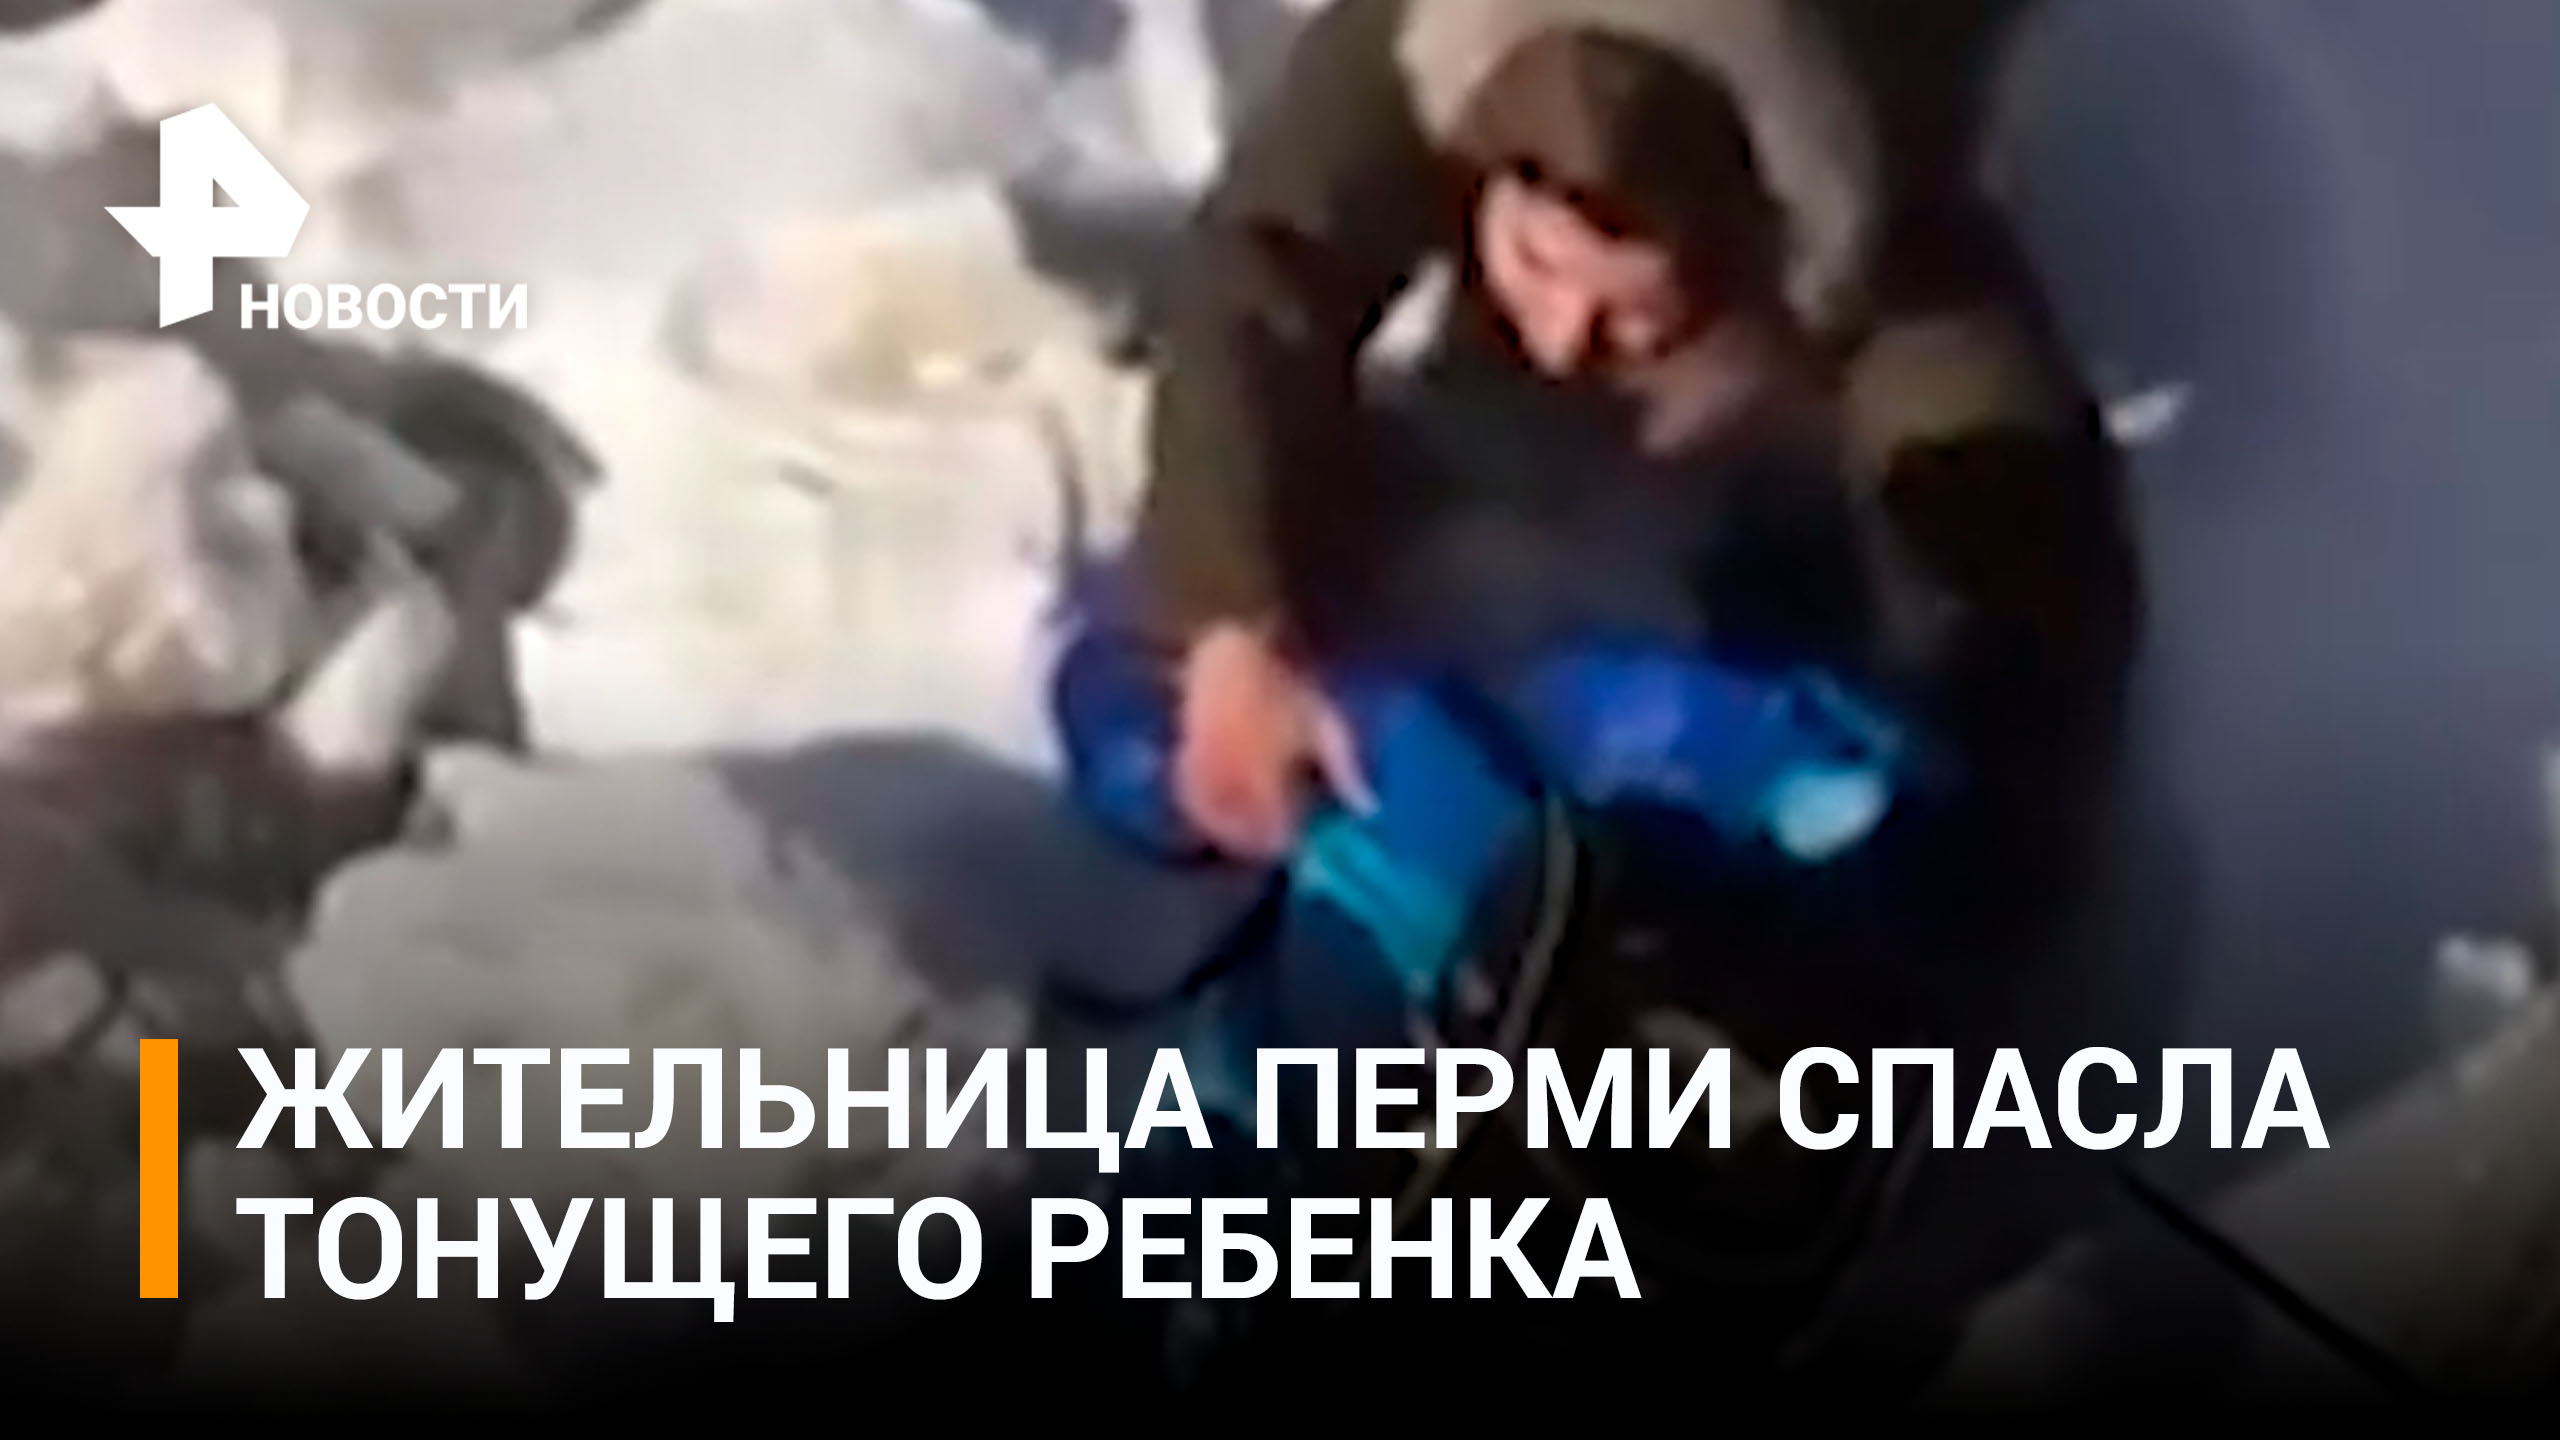 Ежедневный героизм: пассажирка такси спасла тонущего ребенка в Перми / РЕН Новости